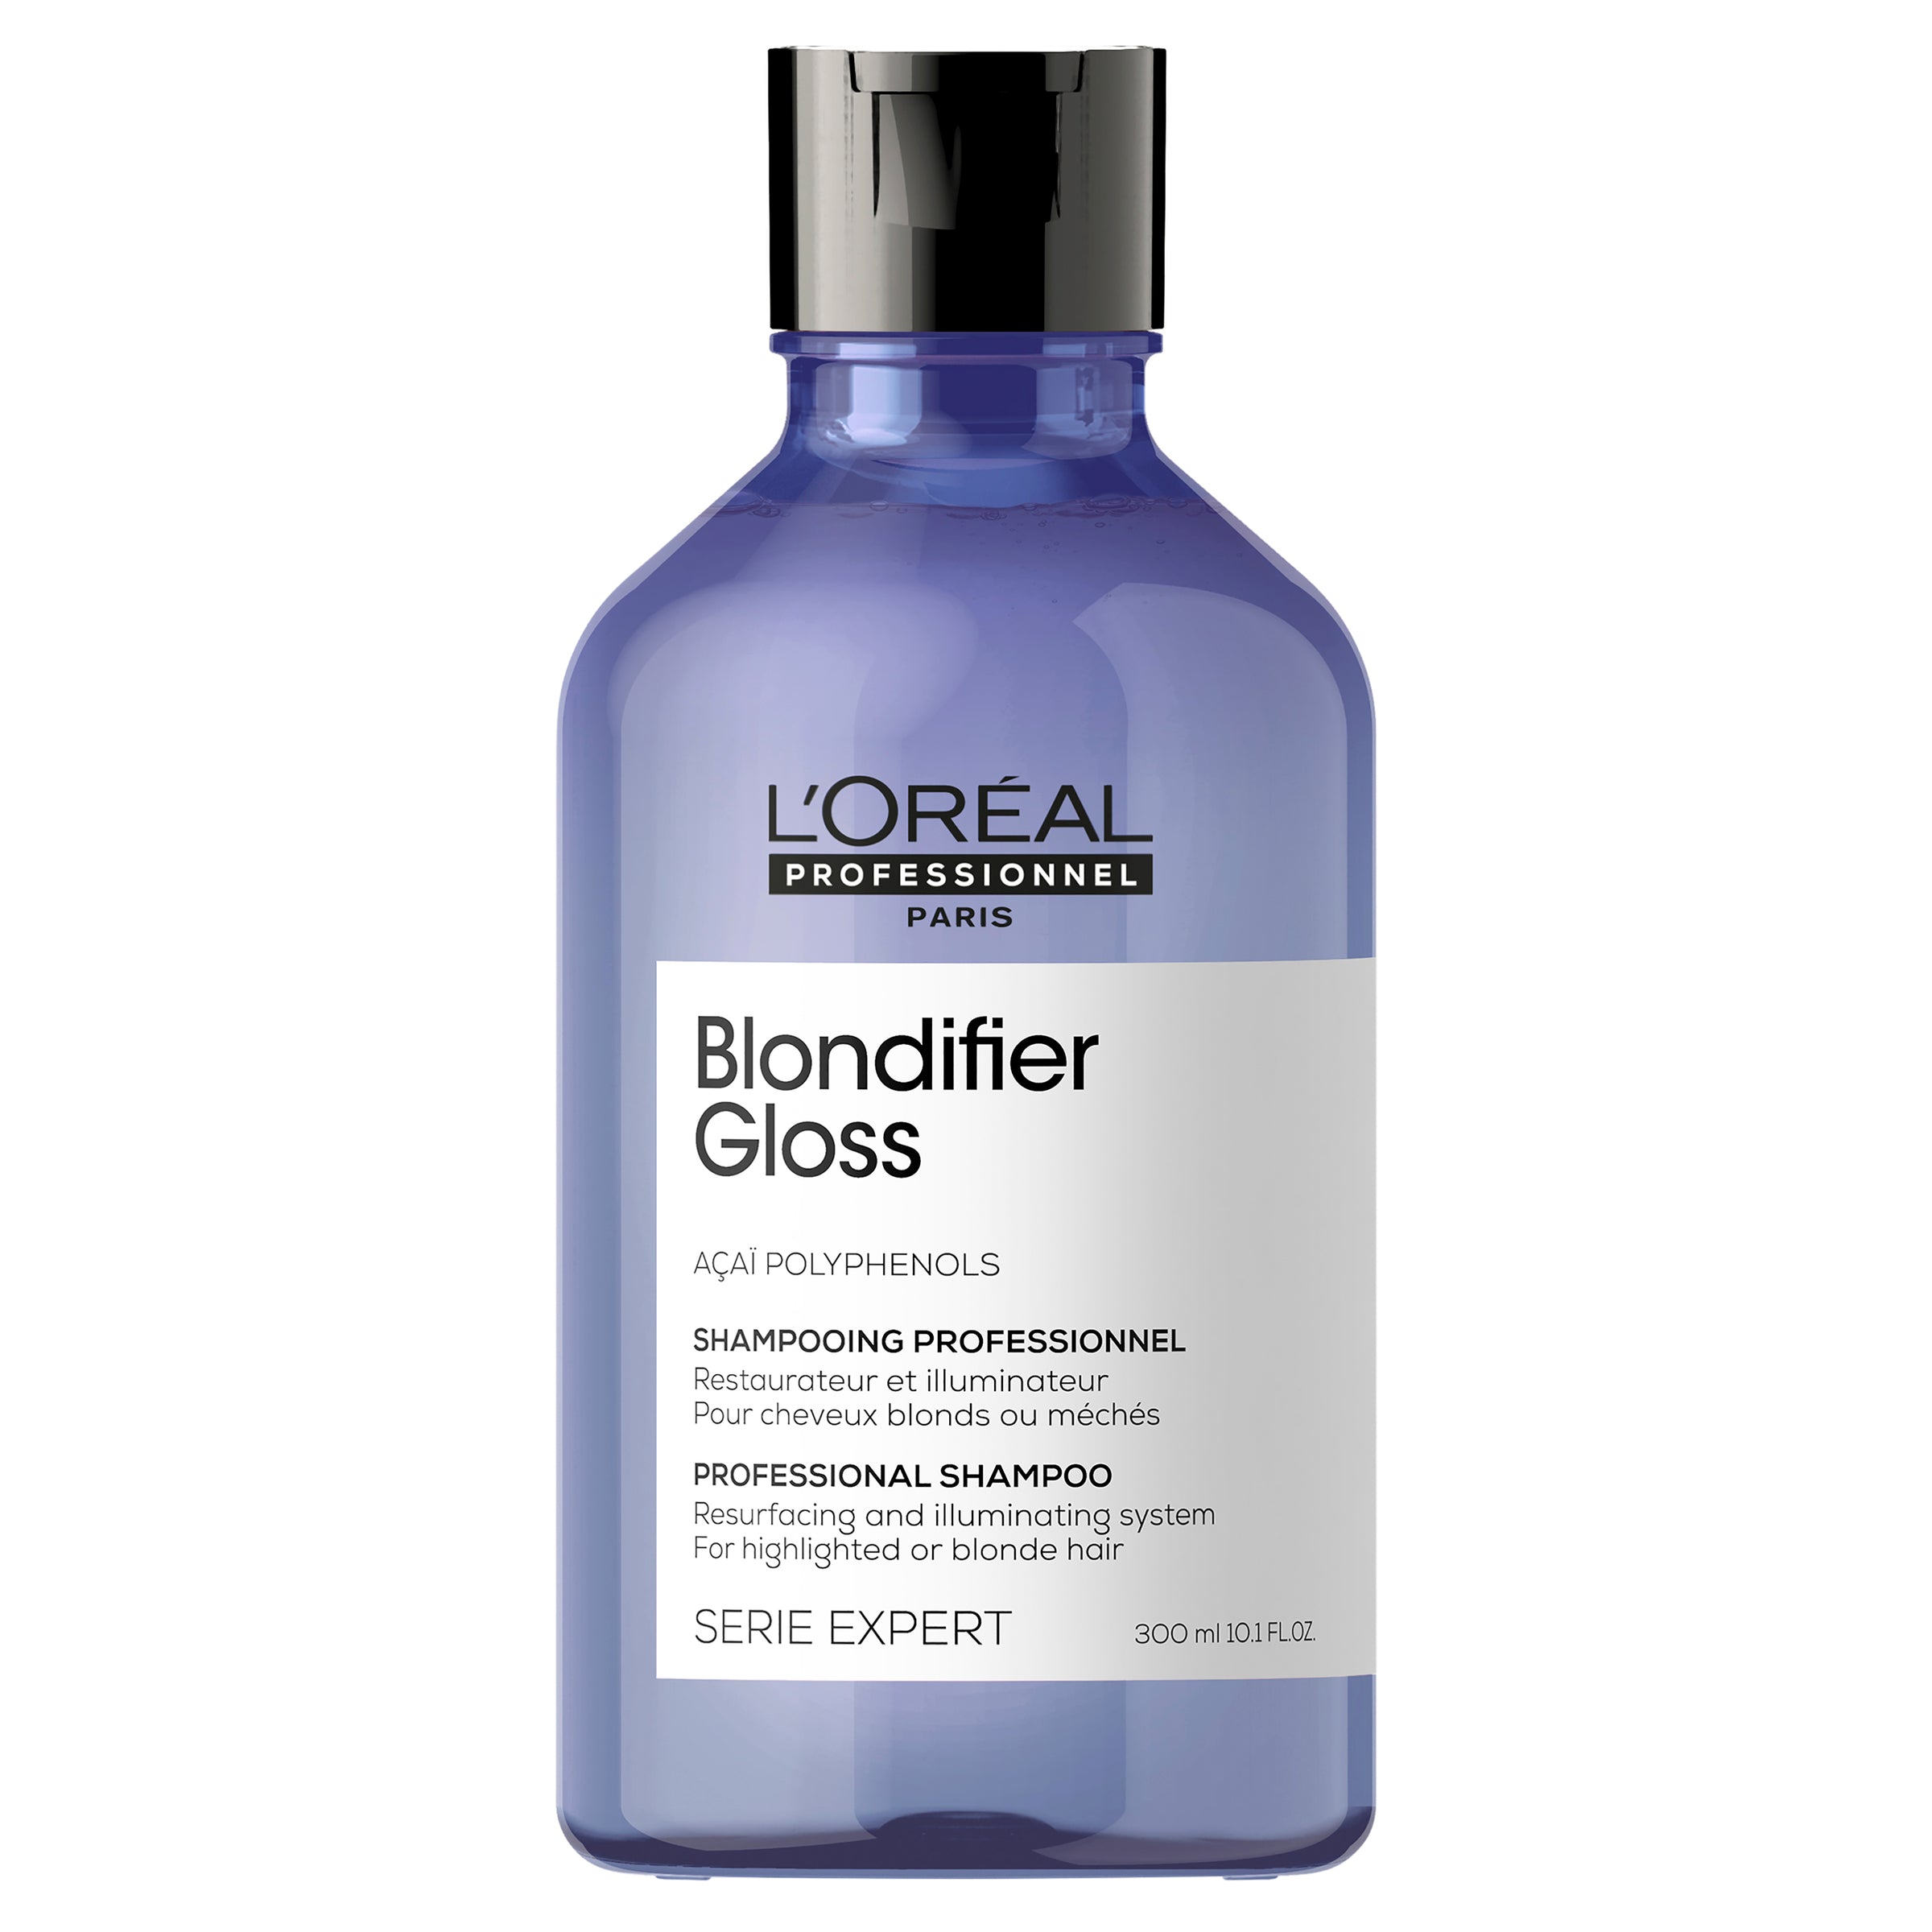 Serie Expert Blondifier Gloss Shampoo 300mL